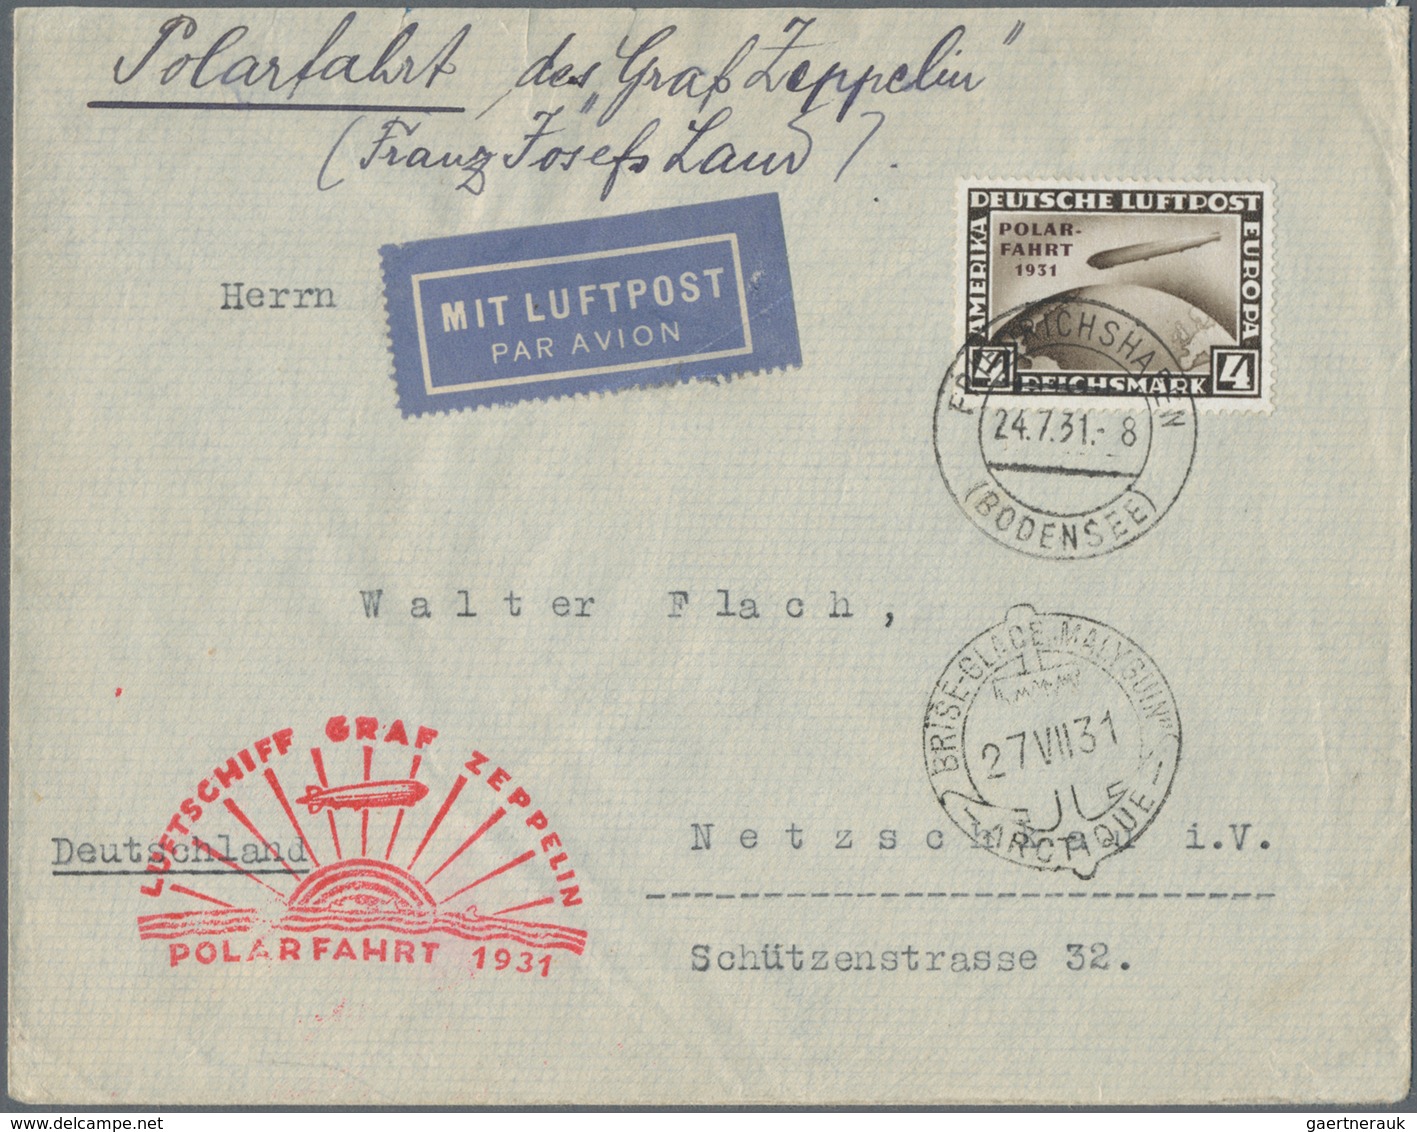 Zeppelinpost Übersee: Zeppelin und Luftpost, hervorrrgender Posten von rund 250 Belegen mit vielen t